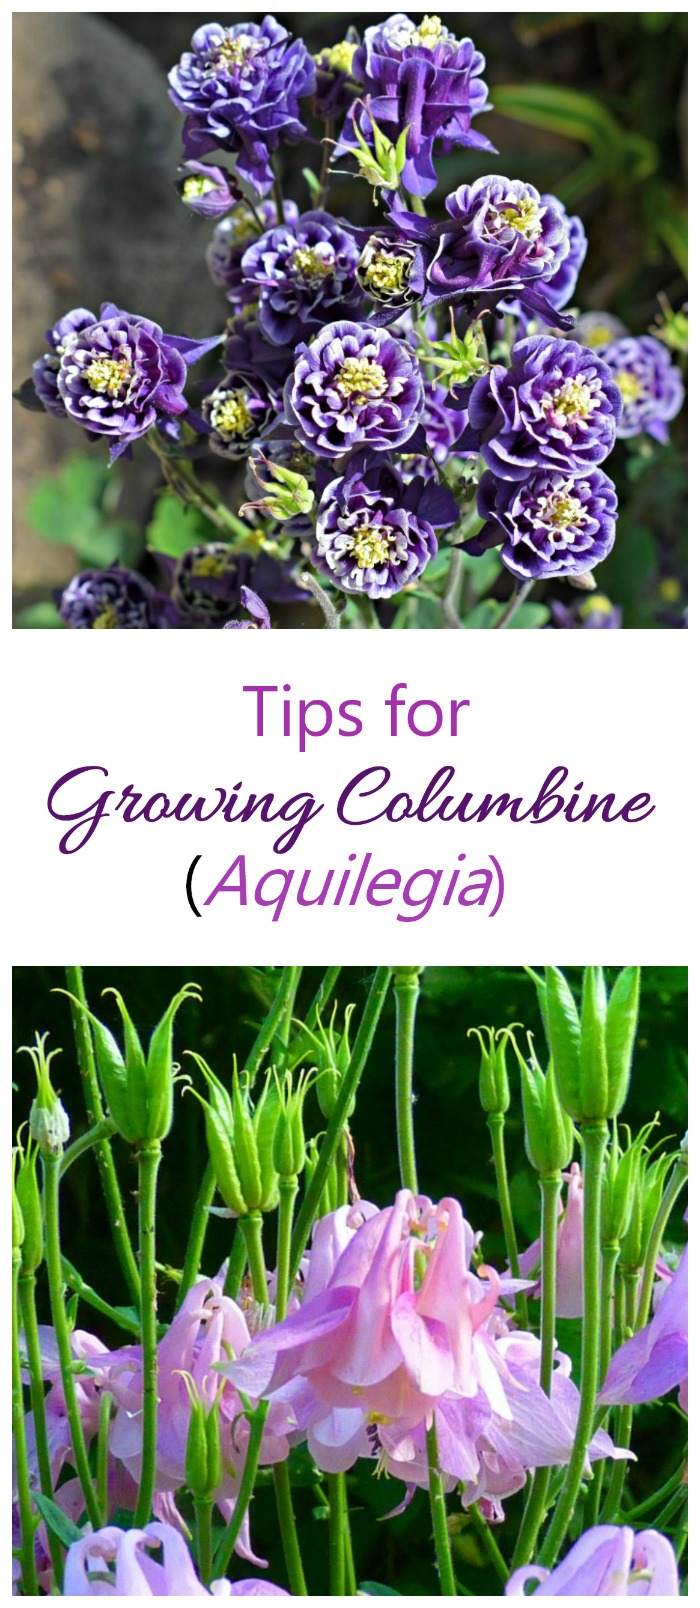 Pestovanie Columbine - Ako pestovať Aquilegia pre unikátne zvončekovité kvety